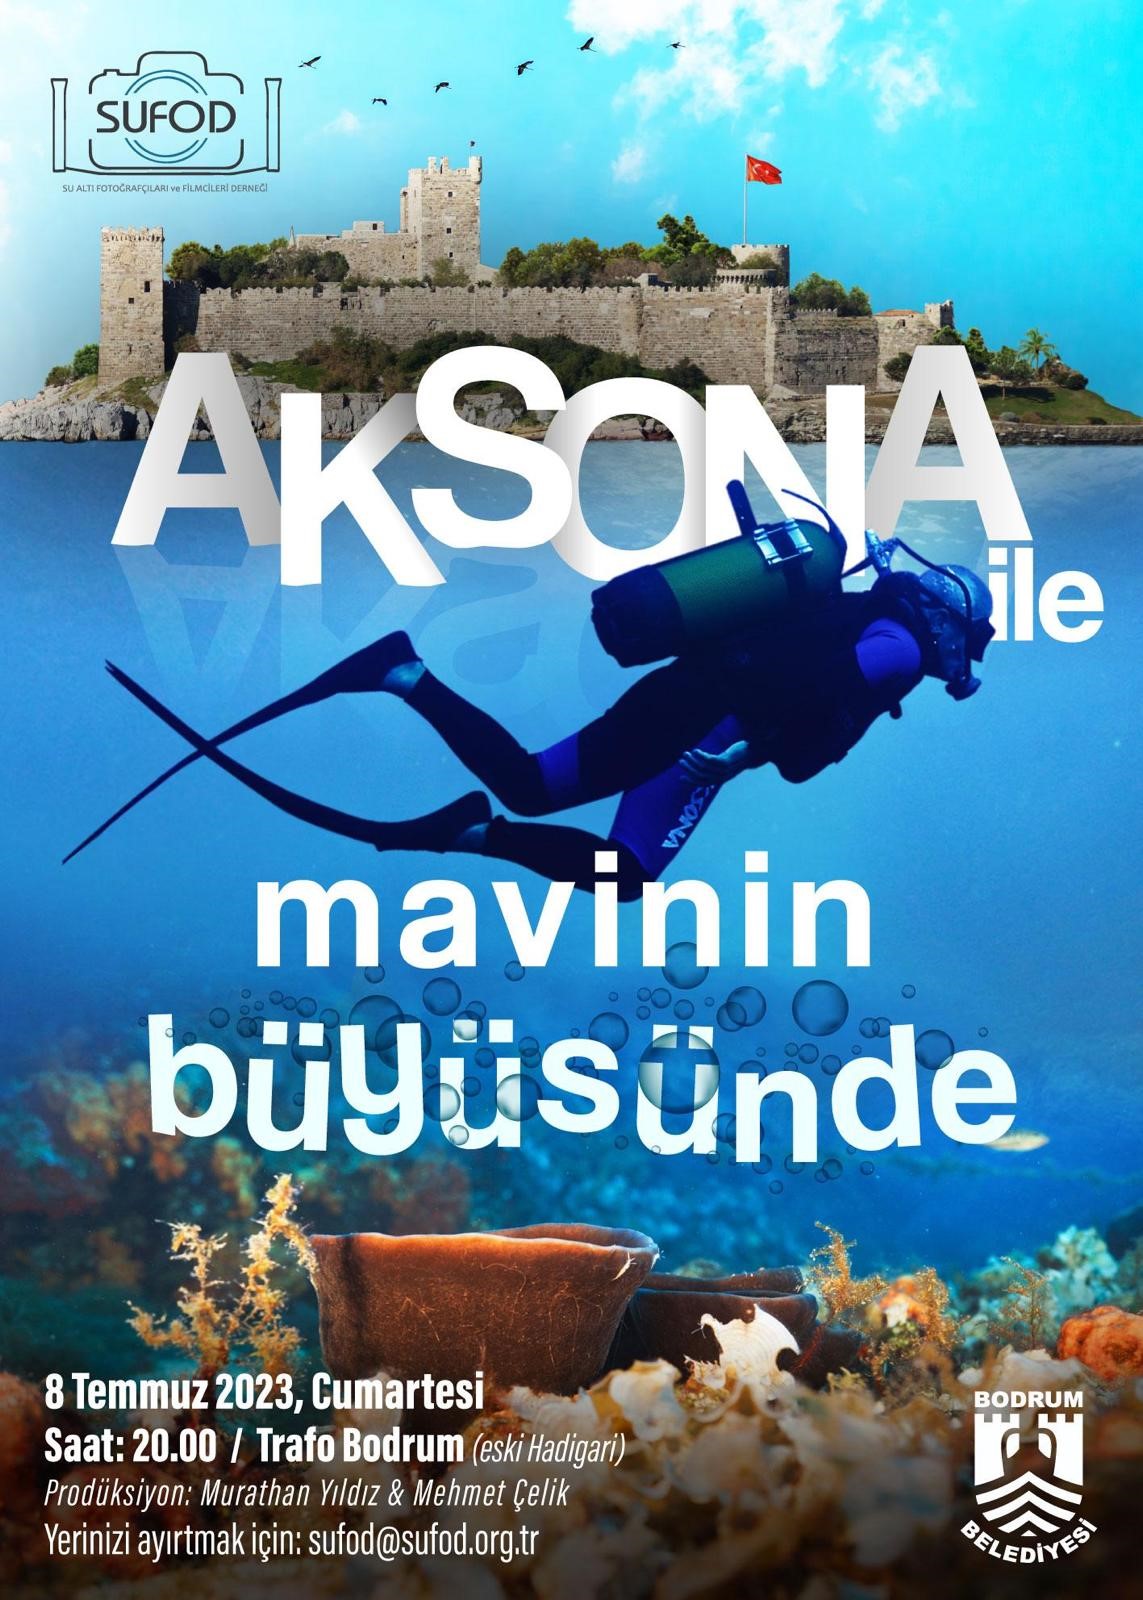 Bodrum'da ‘Aksona ile Mavinin Büyüsünde’ belgeseli